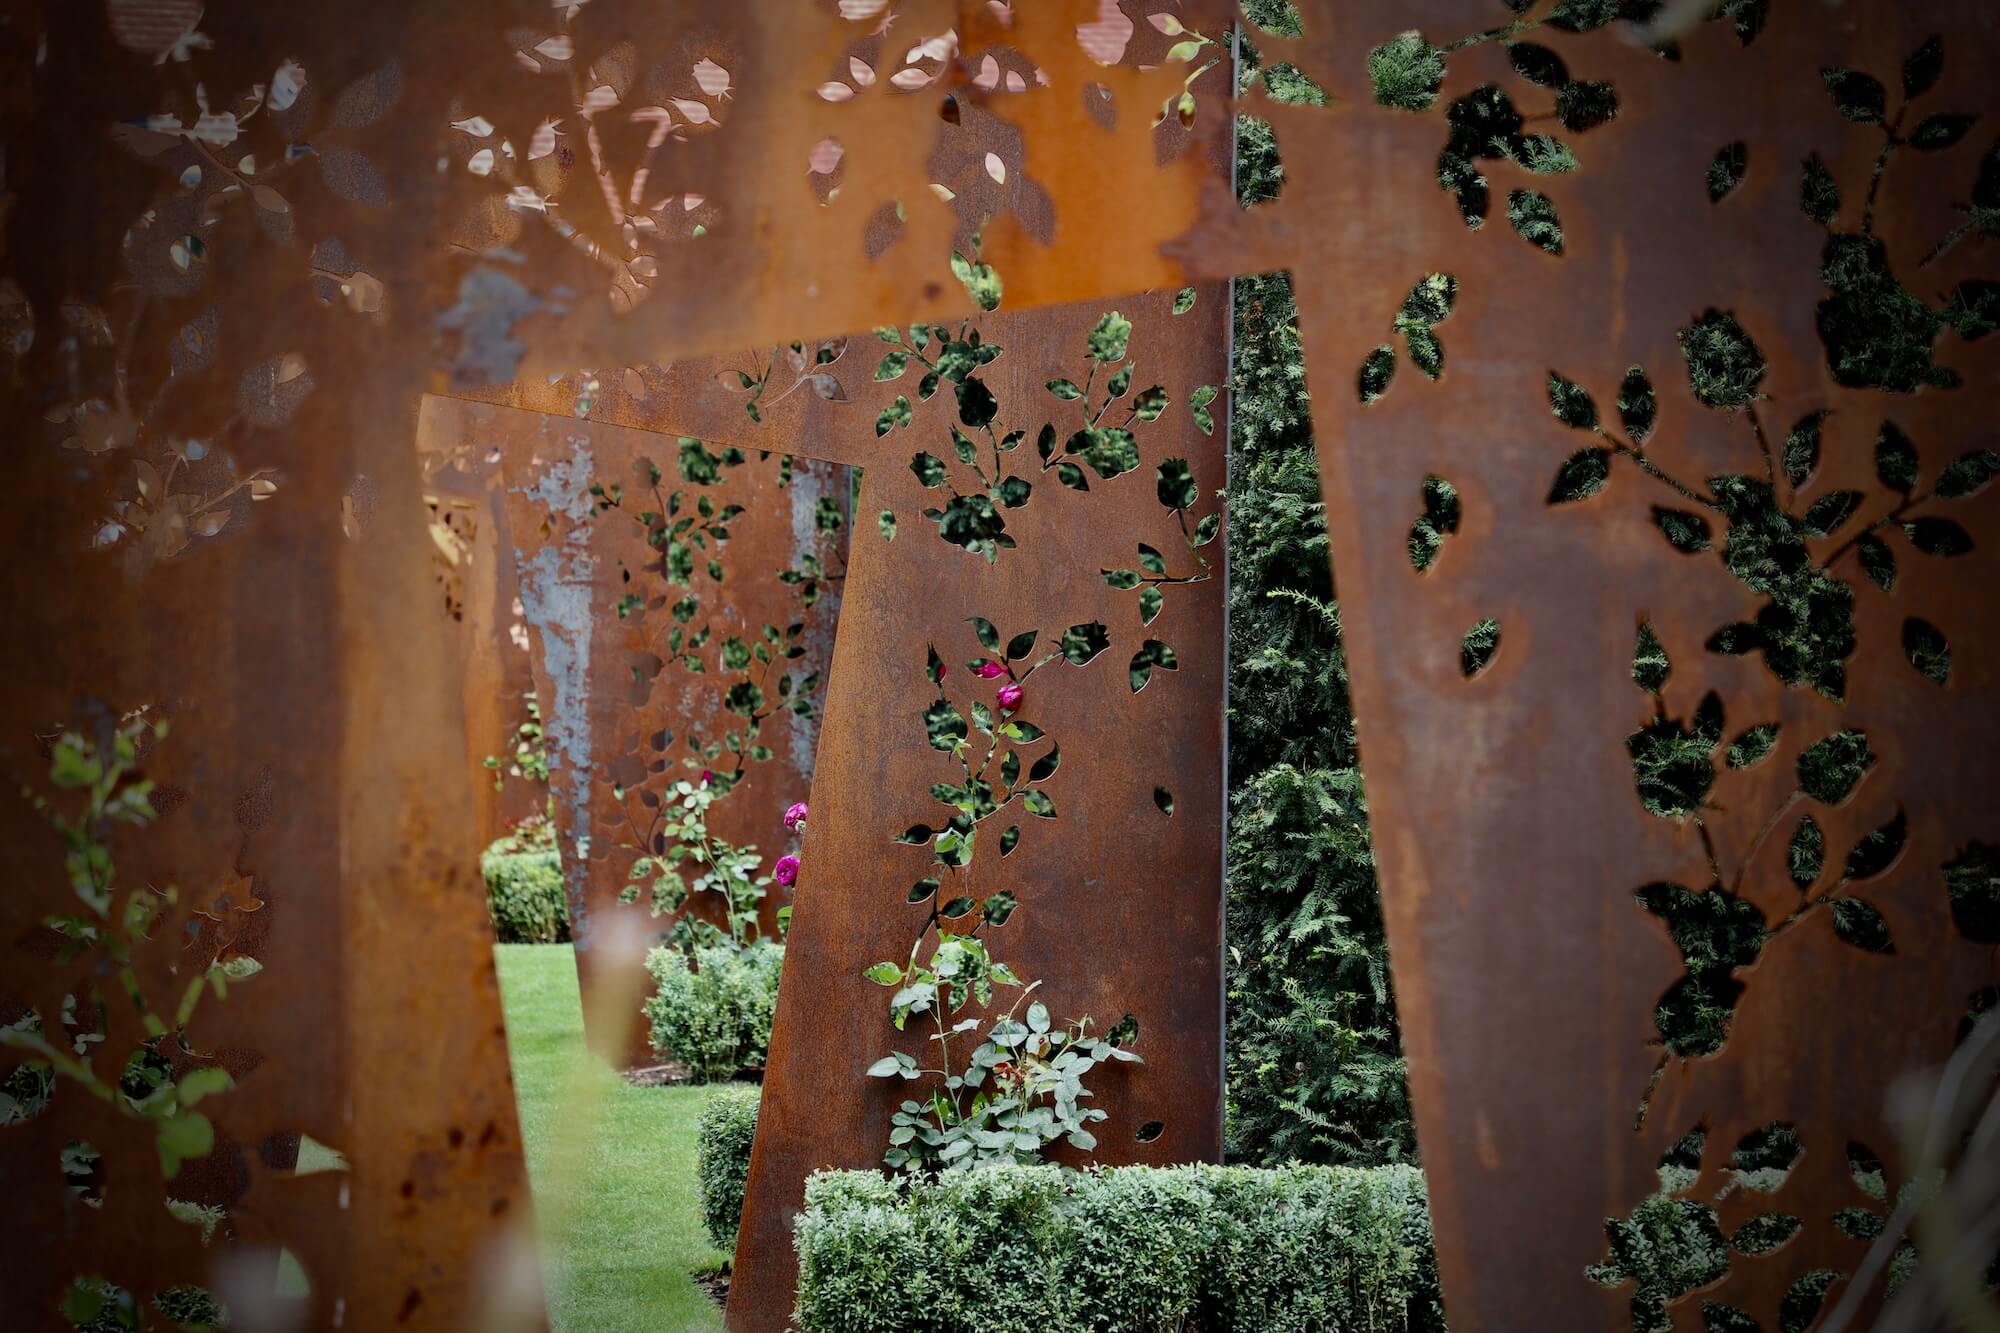 corten sculpture rose garden oxfordshire garden design